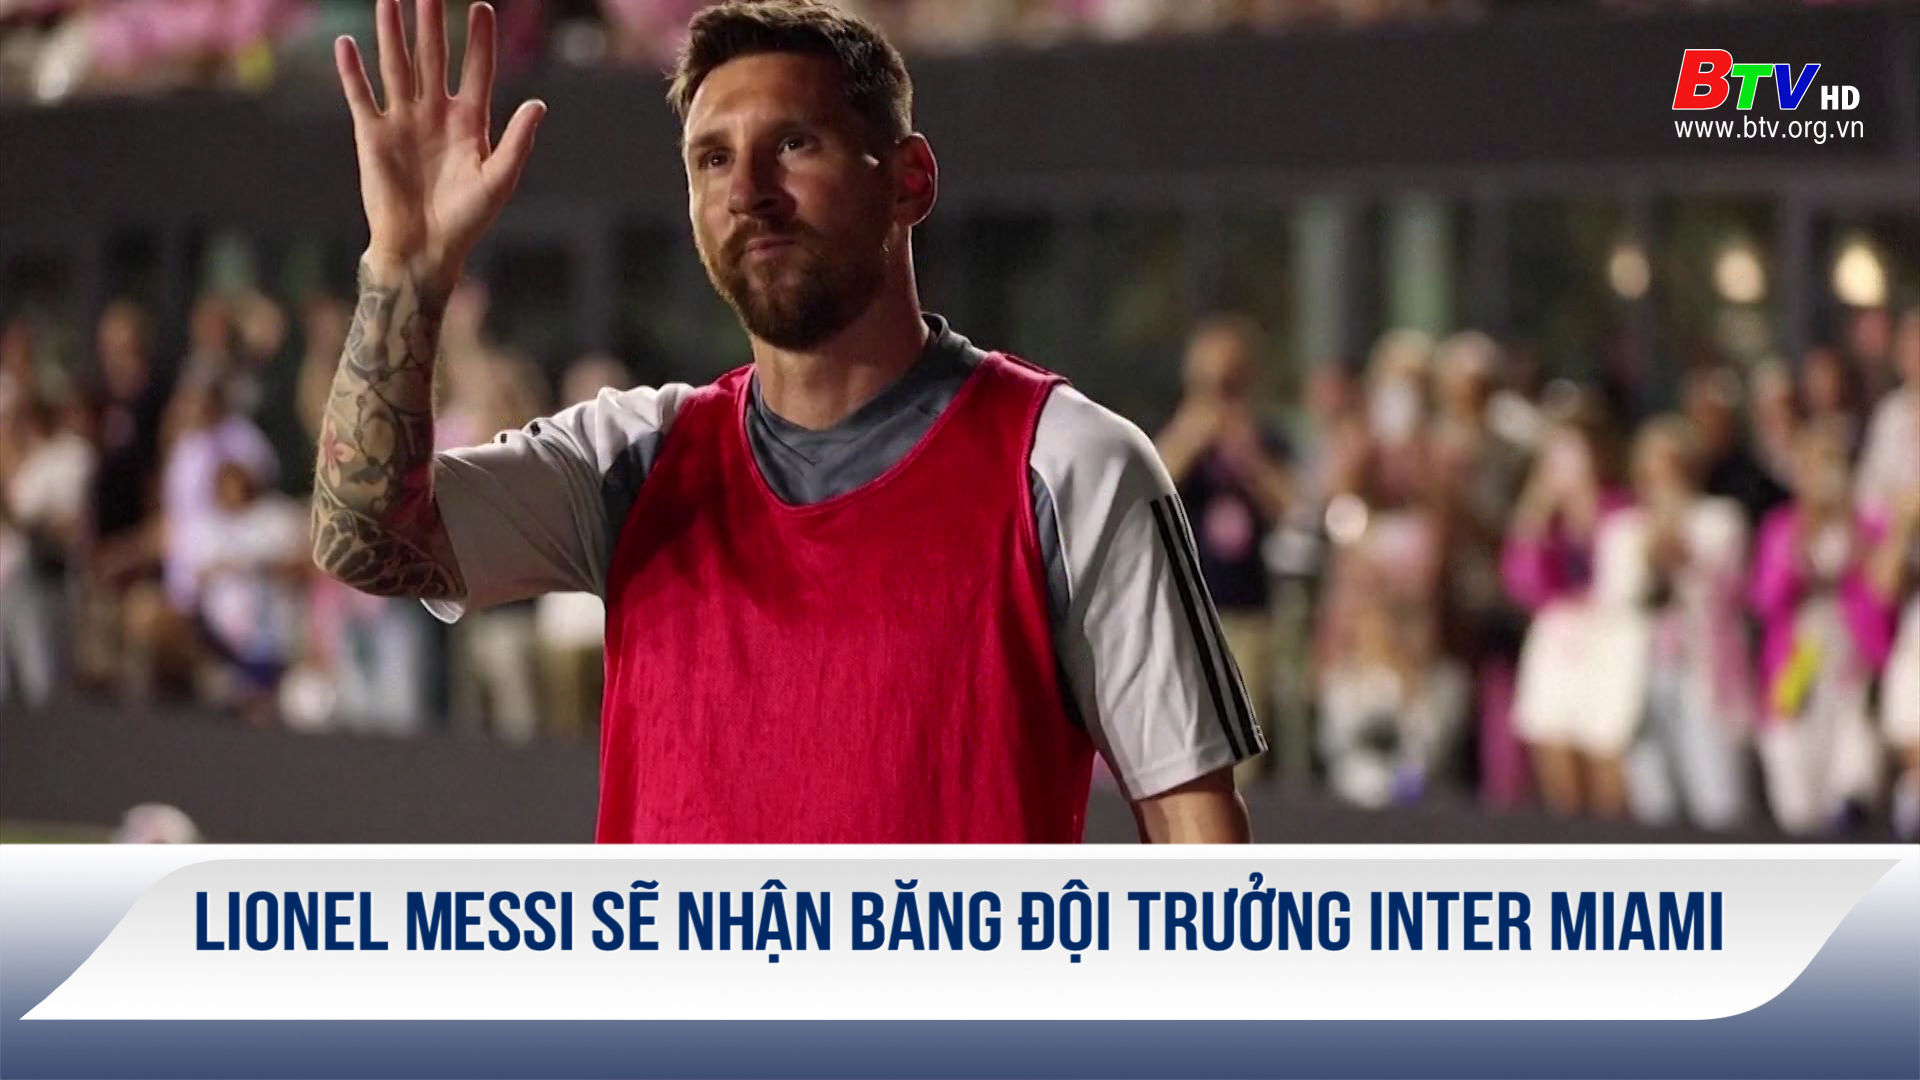 Lionel Messi sẽ nhận băng đội trưởng Inter Miami